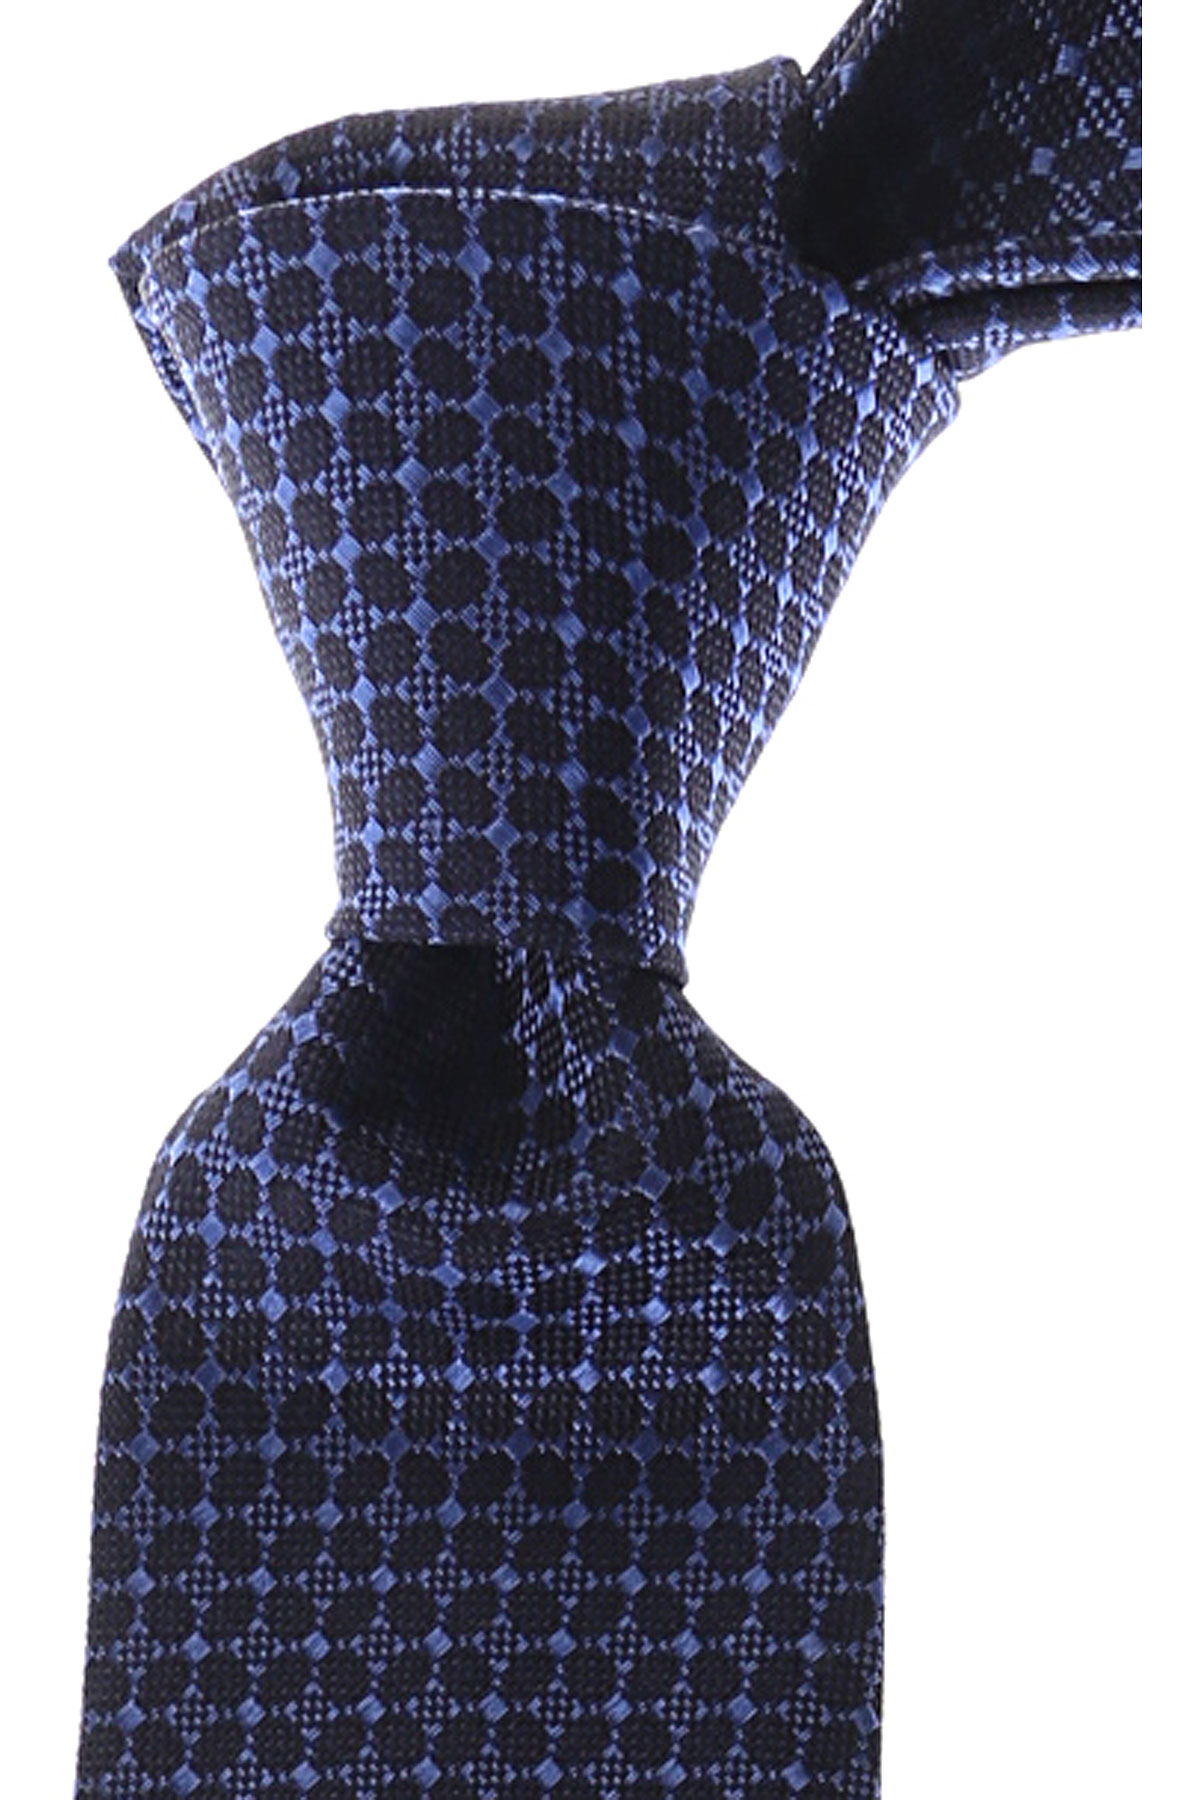 Cravates Gianni Versace , Bleu marine foncé, Soie, 2017